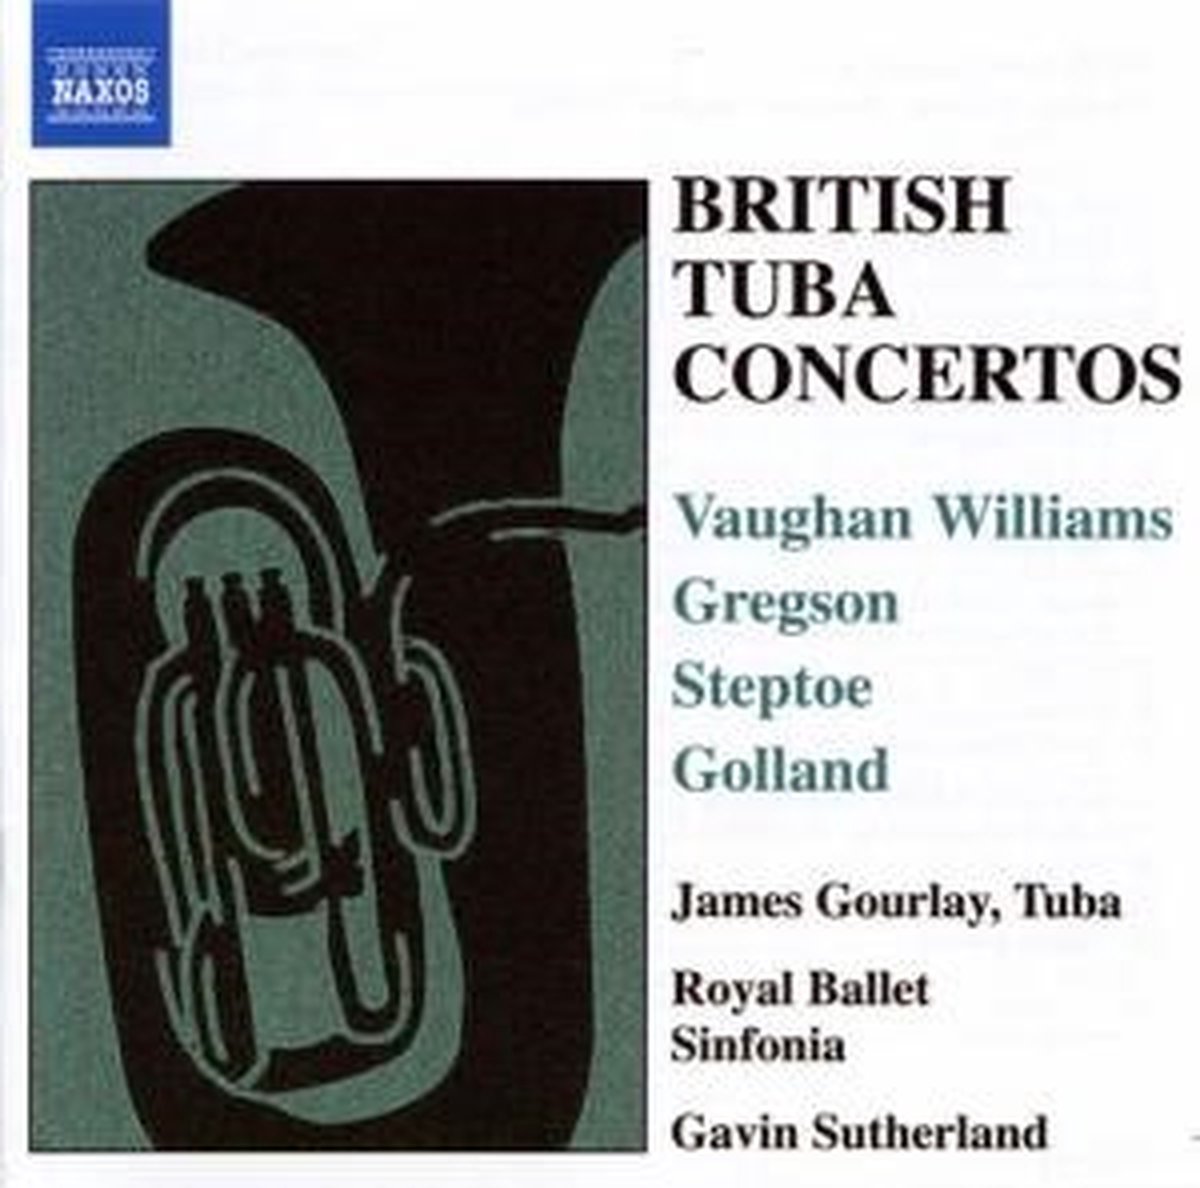 James Gourlay, Royal Ballet Sinfonia, Gavin Sutherland - British Tuba Concertos (CD) - James Gourlay, Royal Ballet Sinfonia, Gavin Sutherland